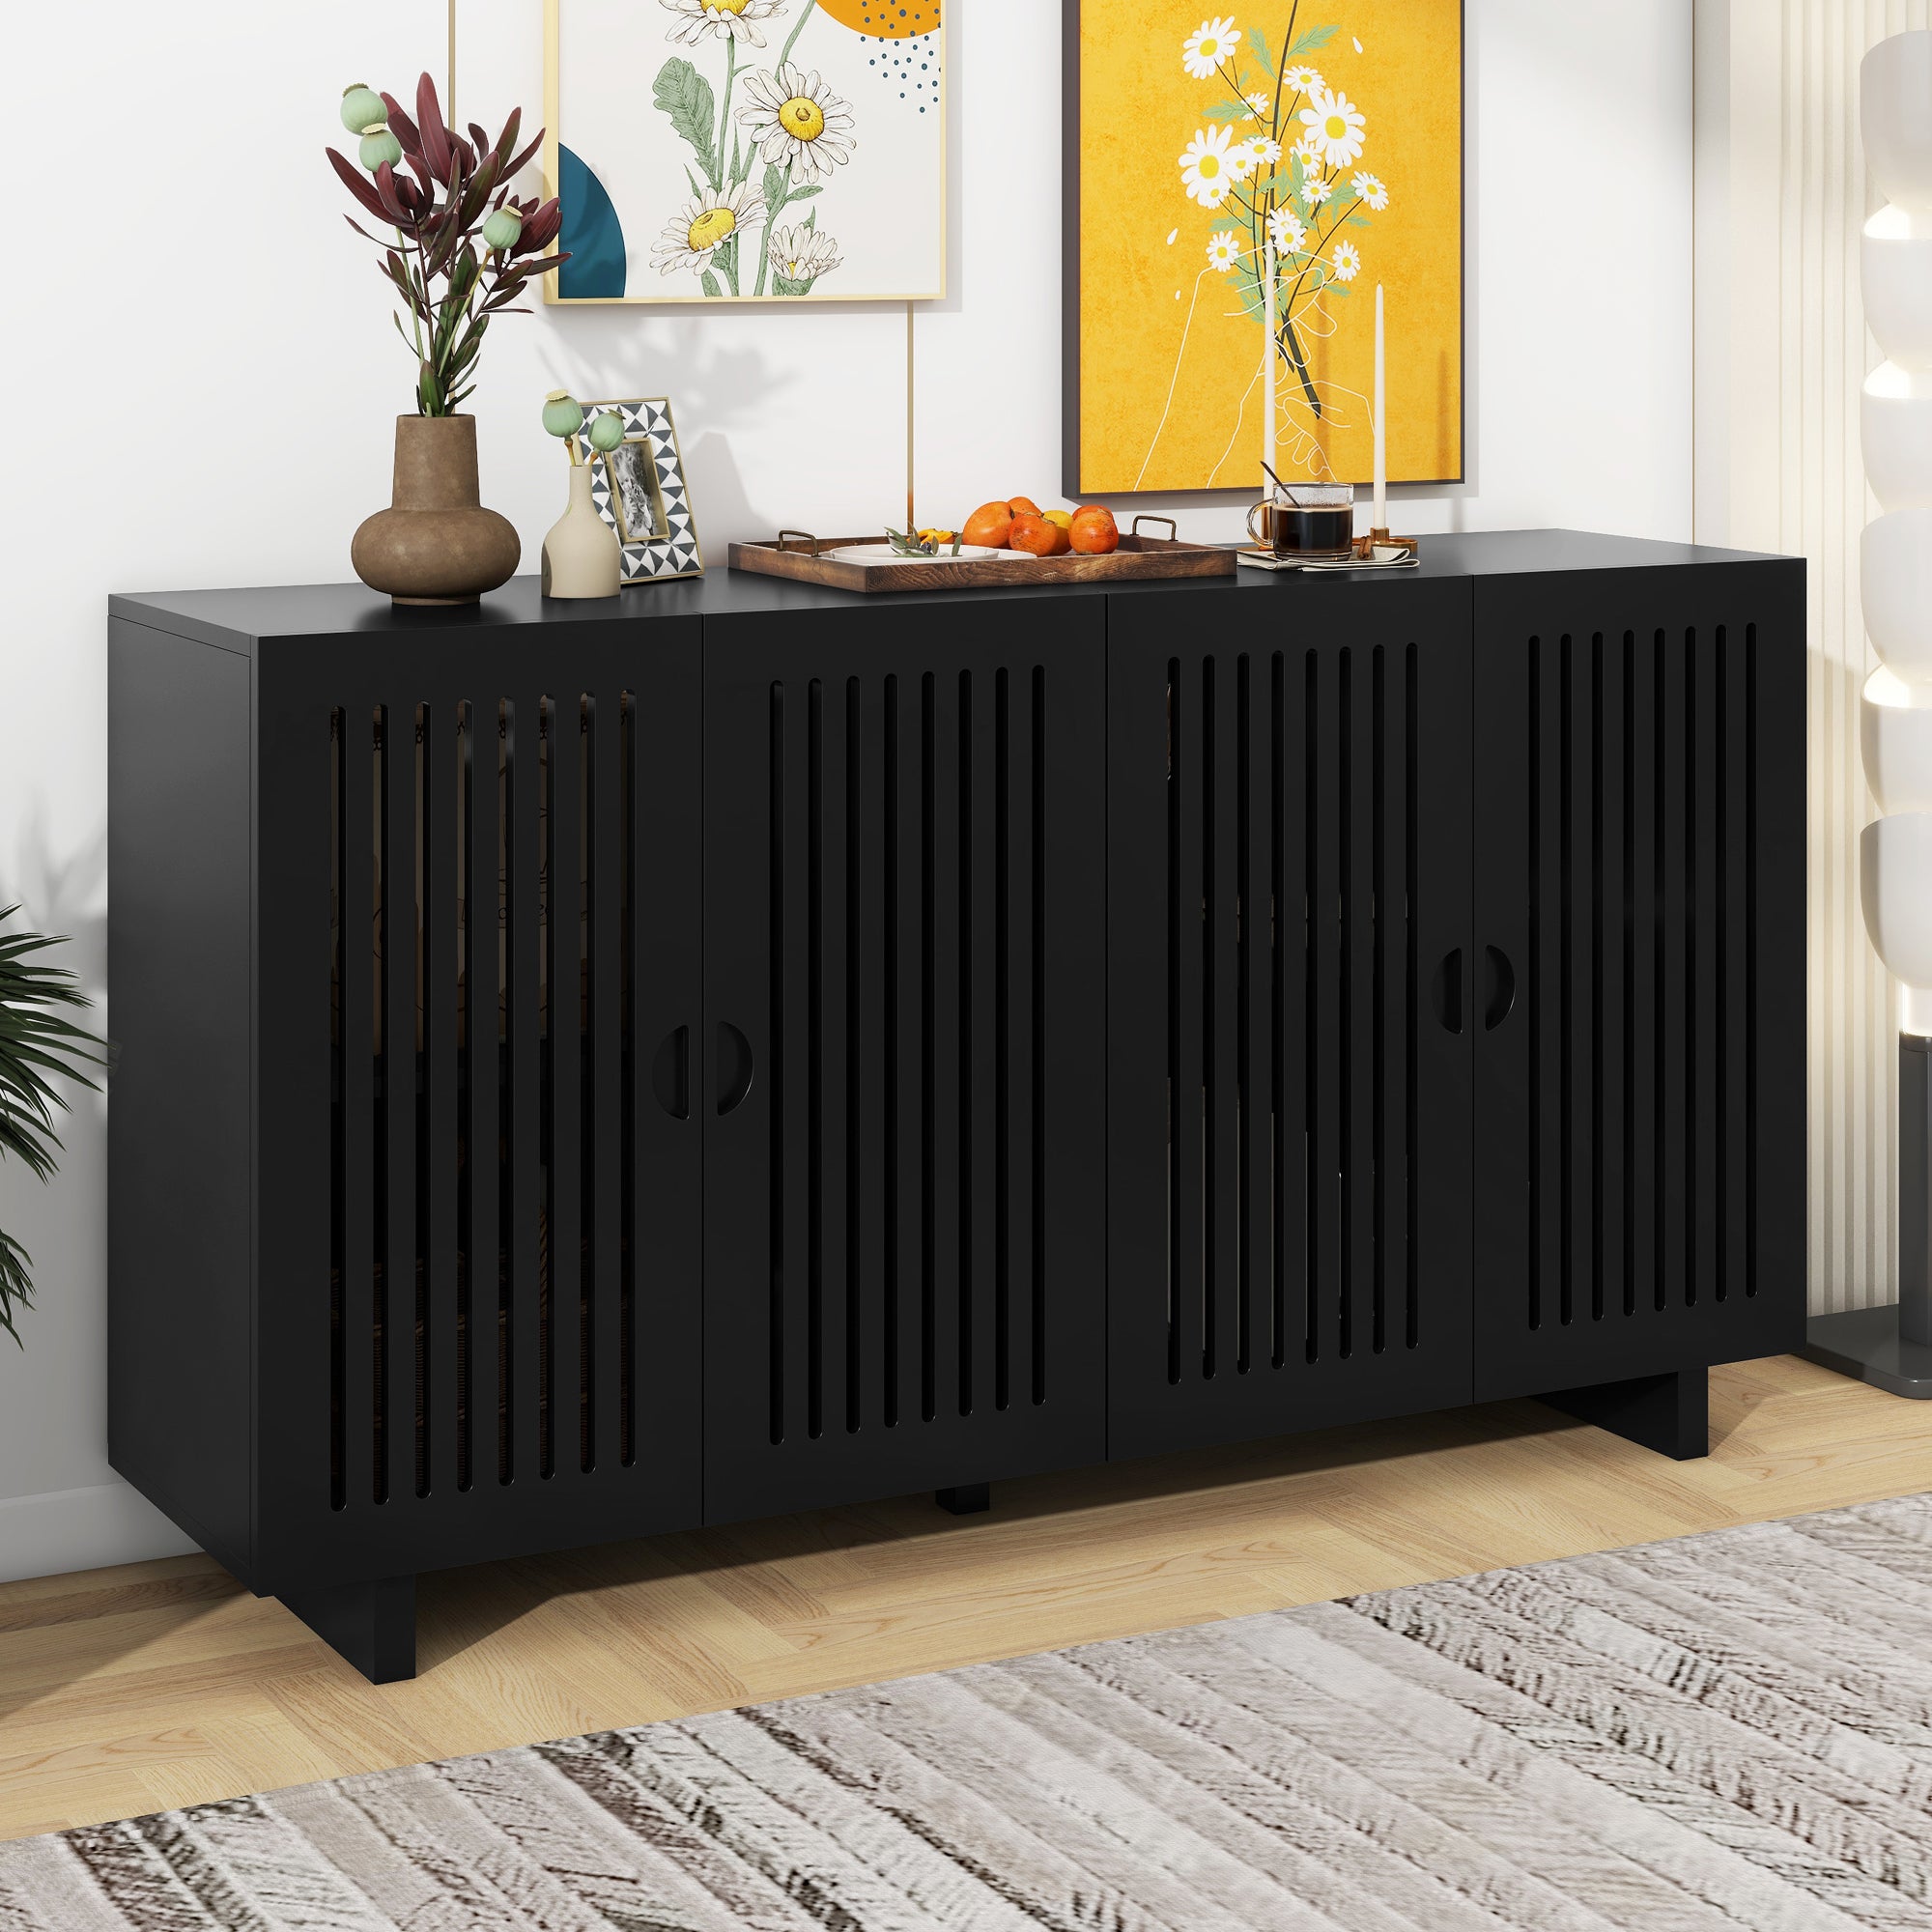 Modern Style Sideboard with Superior Storage black-dining room-adjustabel shelves-mdf